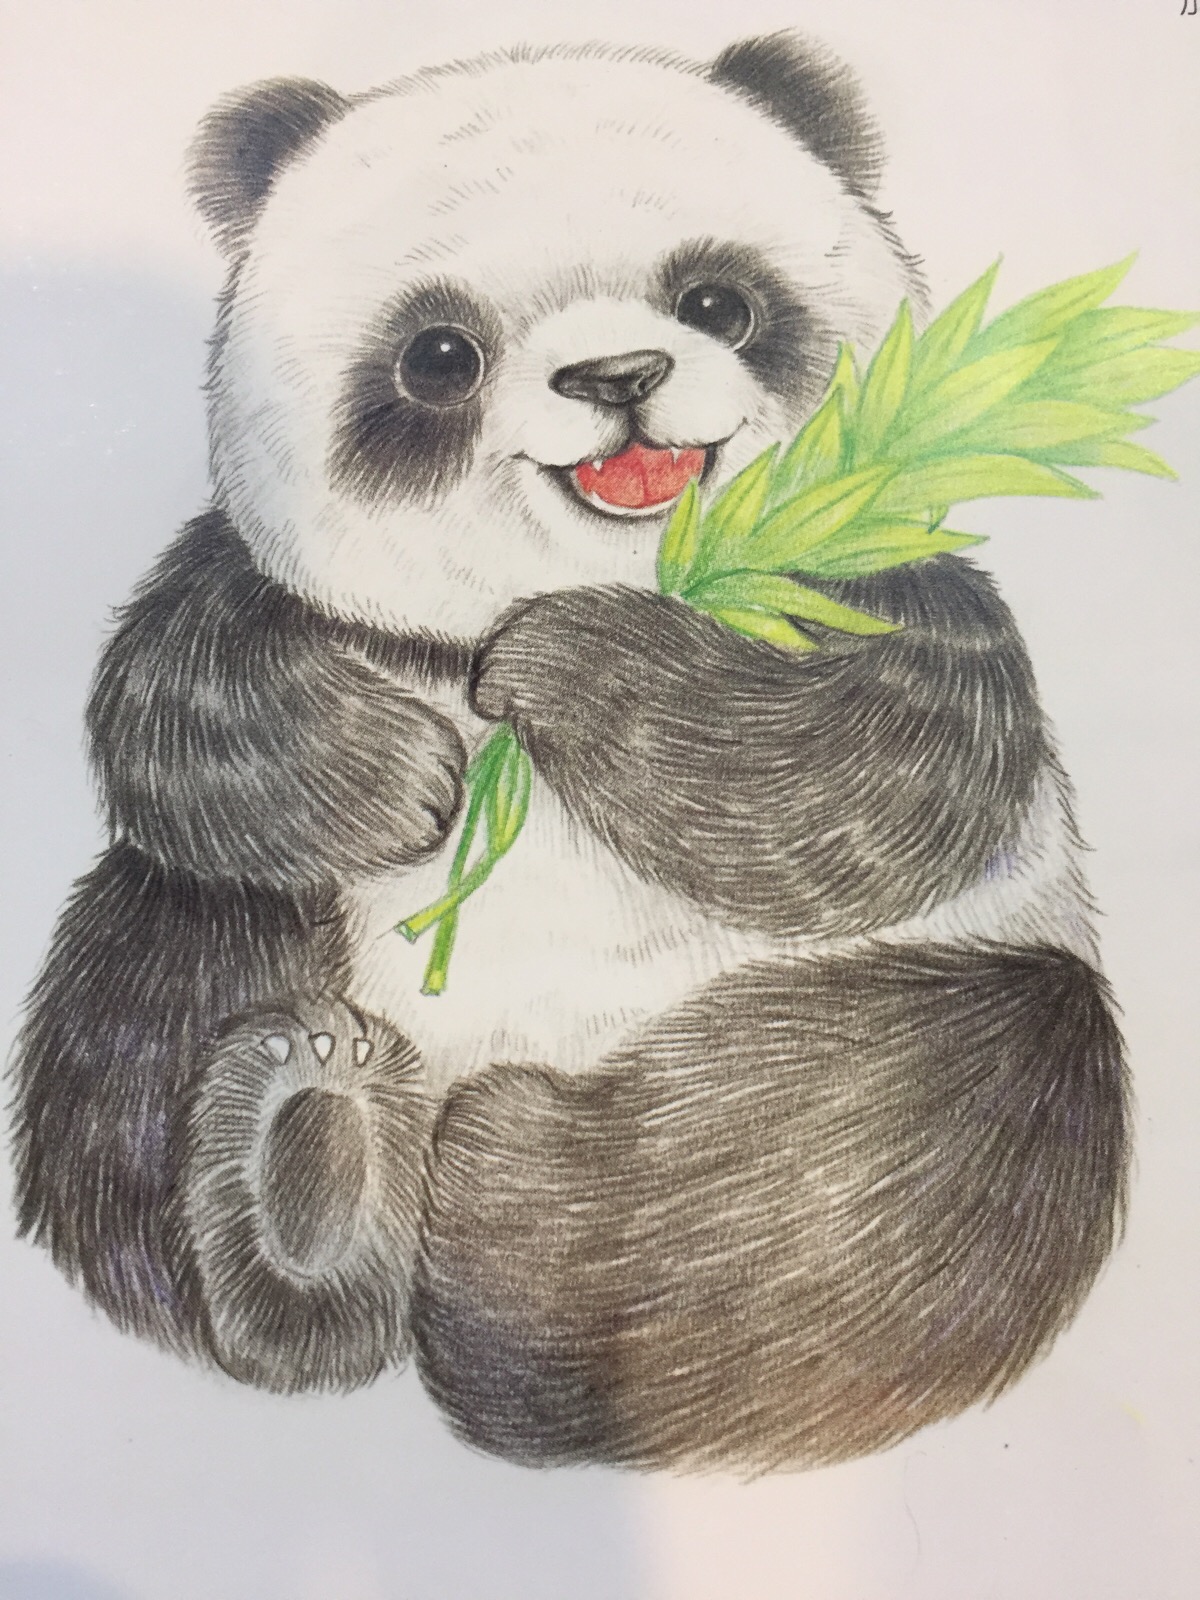 彩铅画 小熊猫-堆糖,美好生活研究所